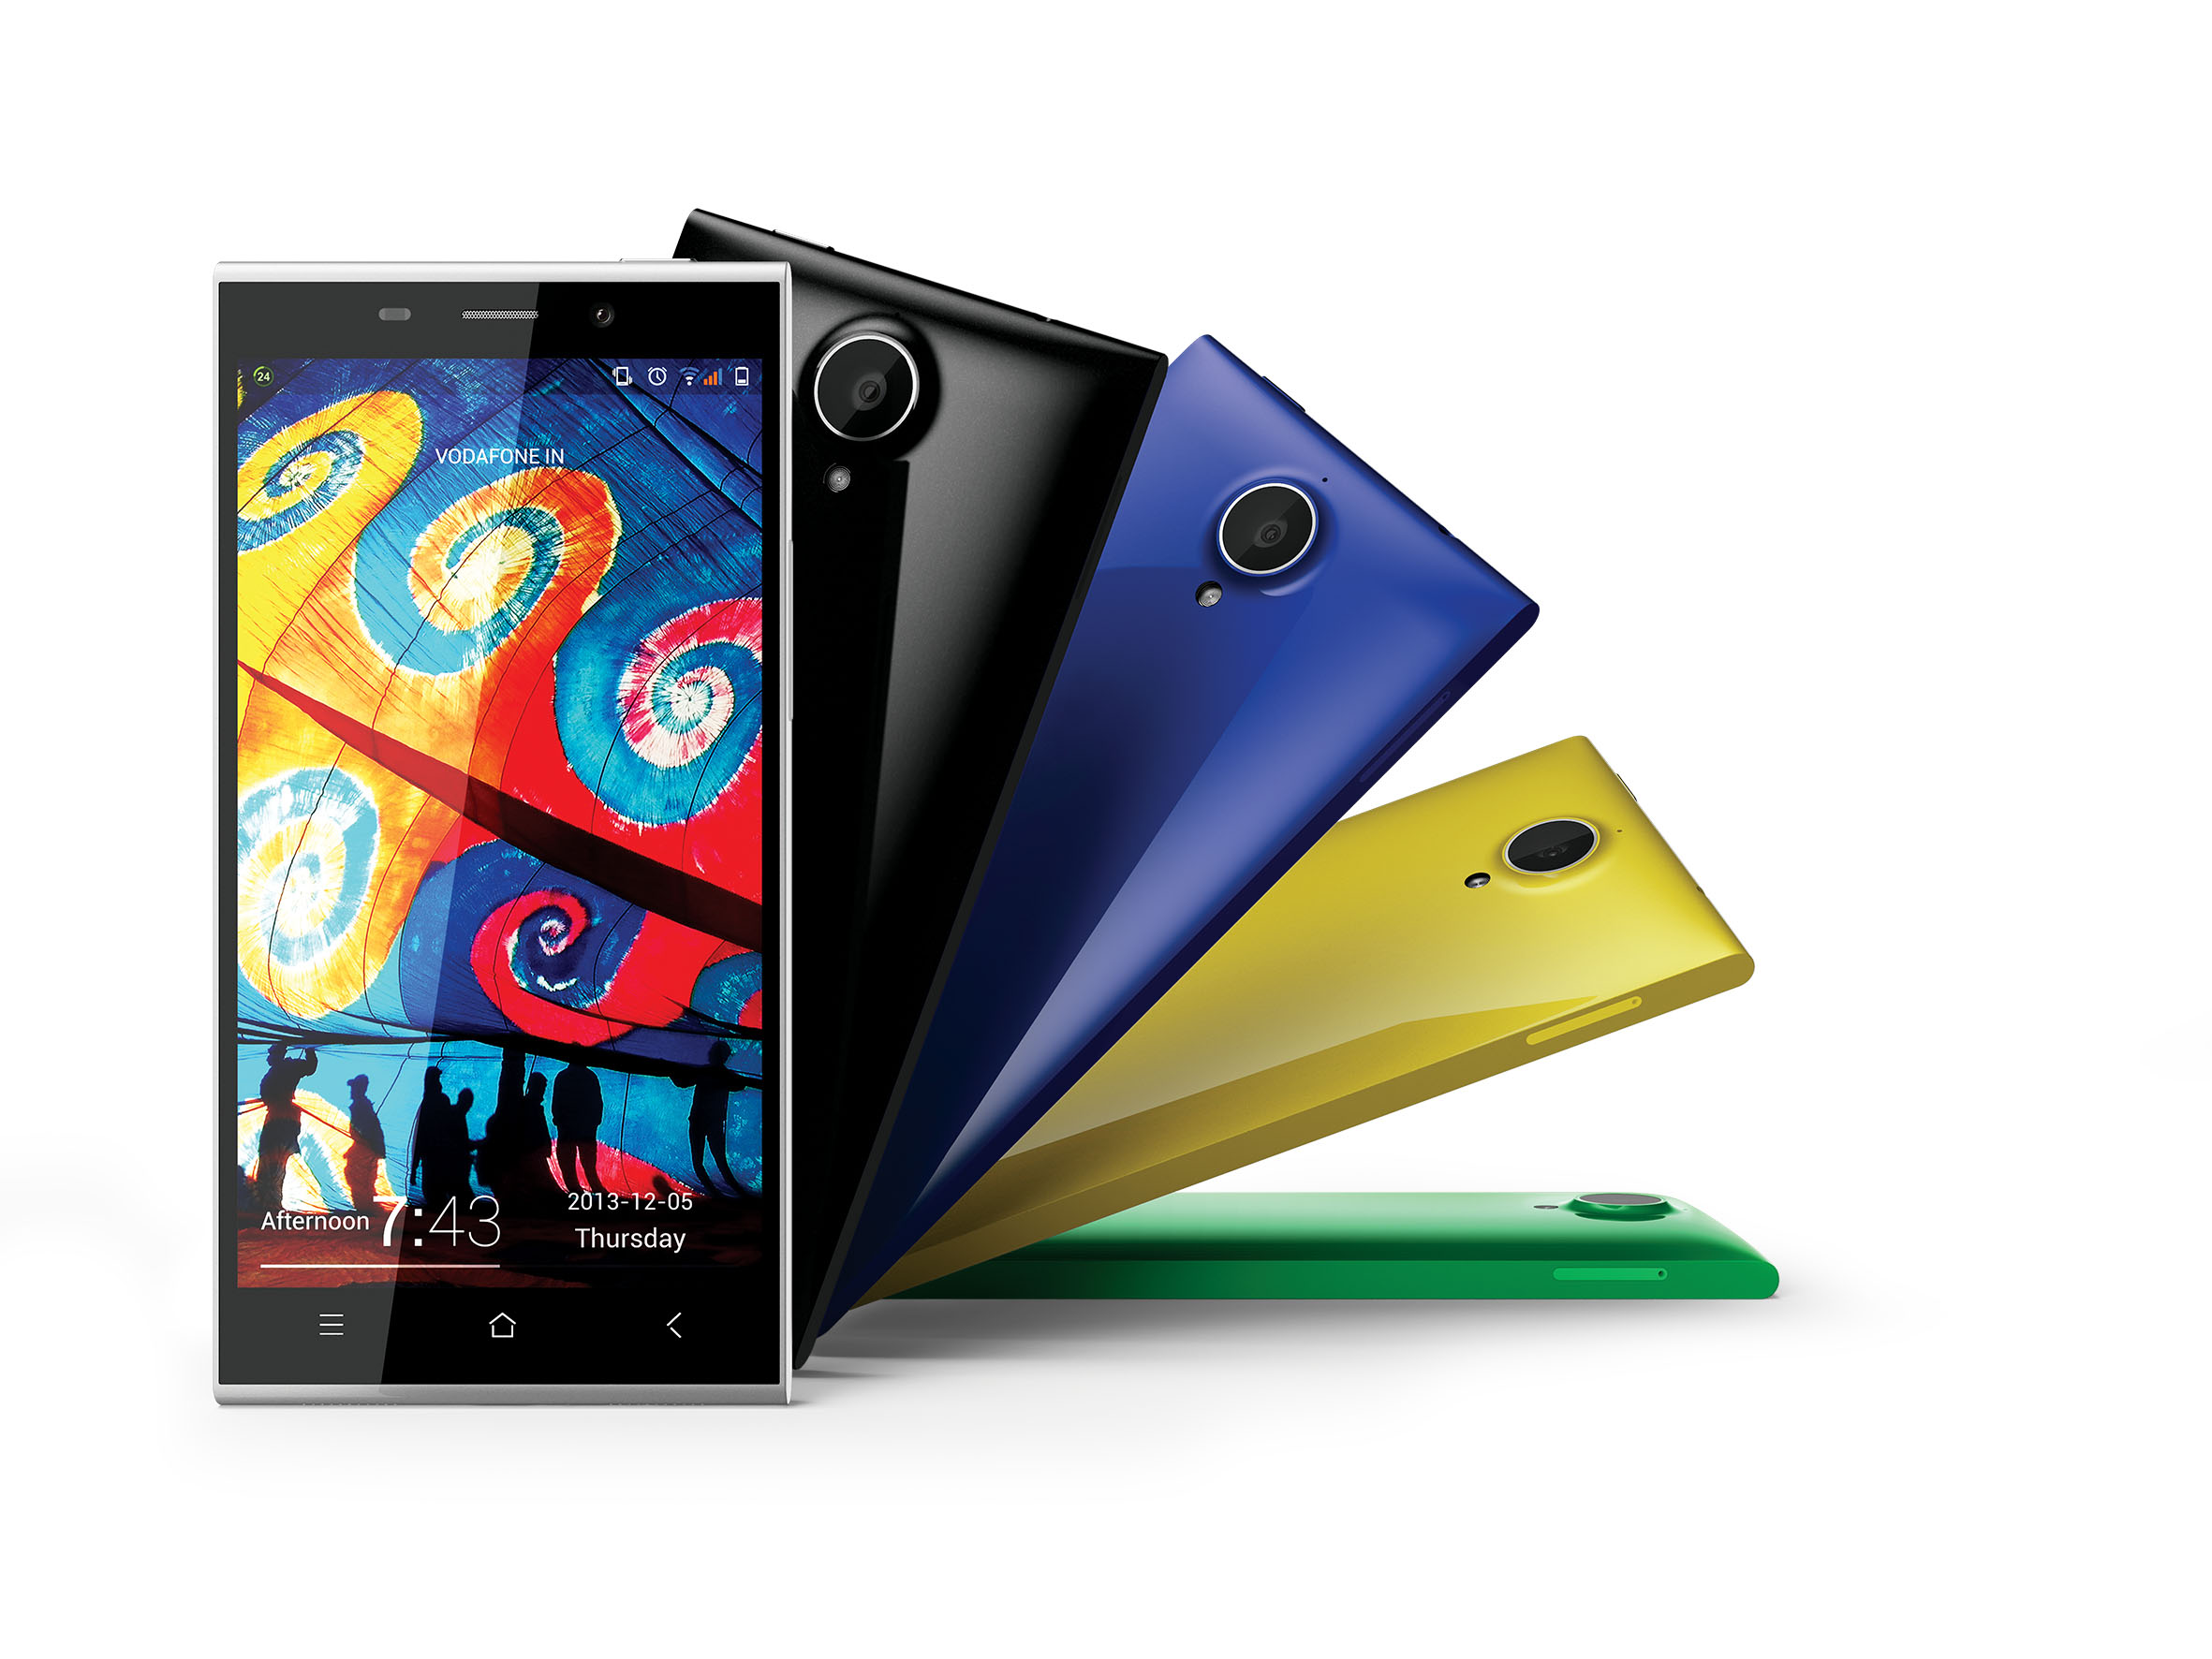 Mẫu smartphone màn hình IPS 5,5 inch full HD “nét căng” giá rẻ Gionee E7 có thiết kế sang trọng và trang nhã